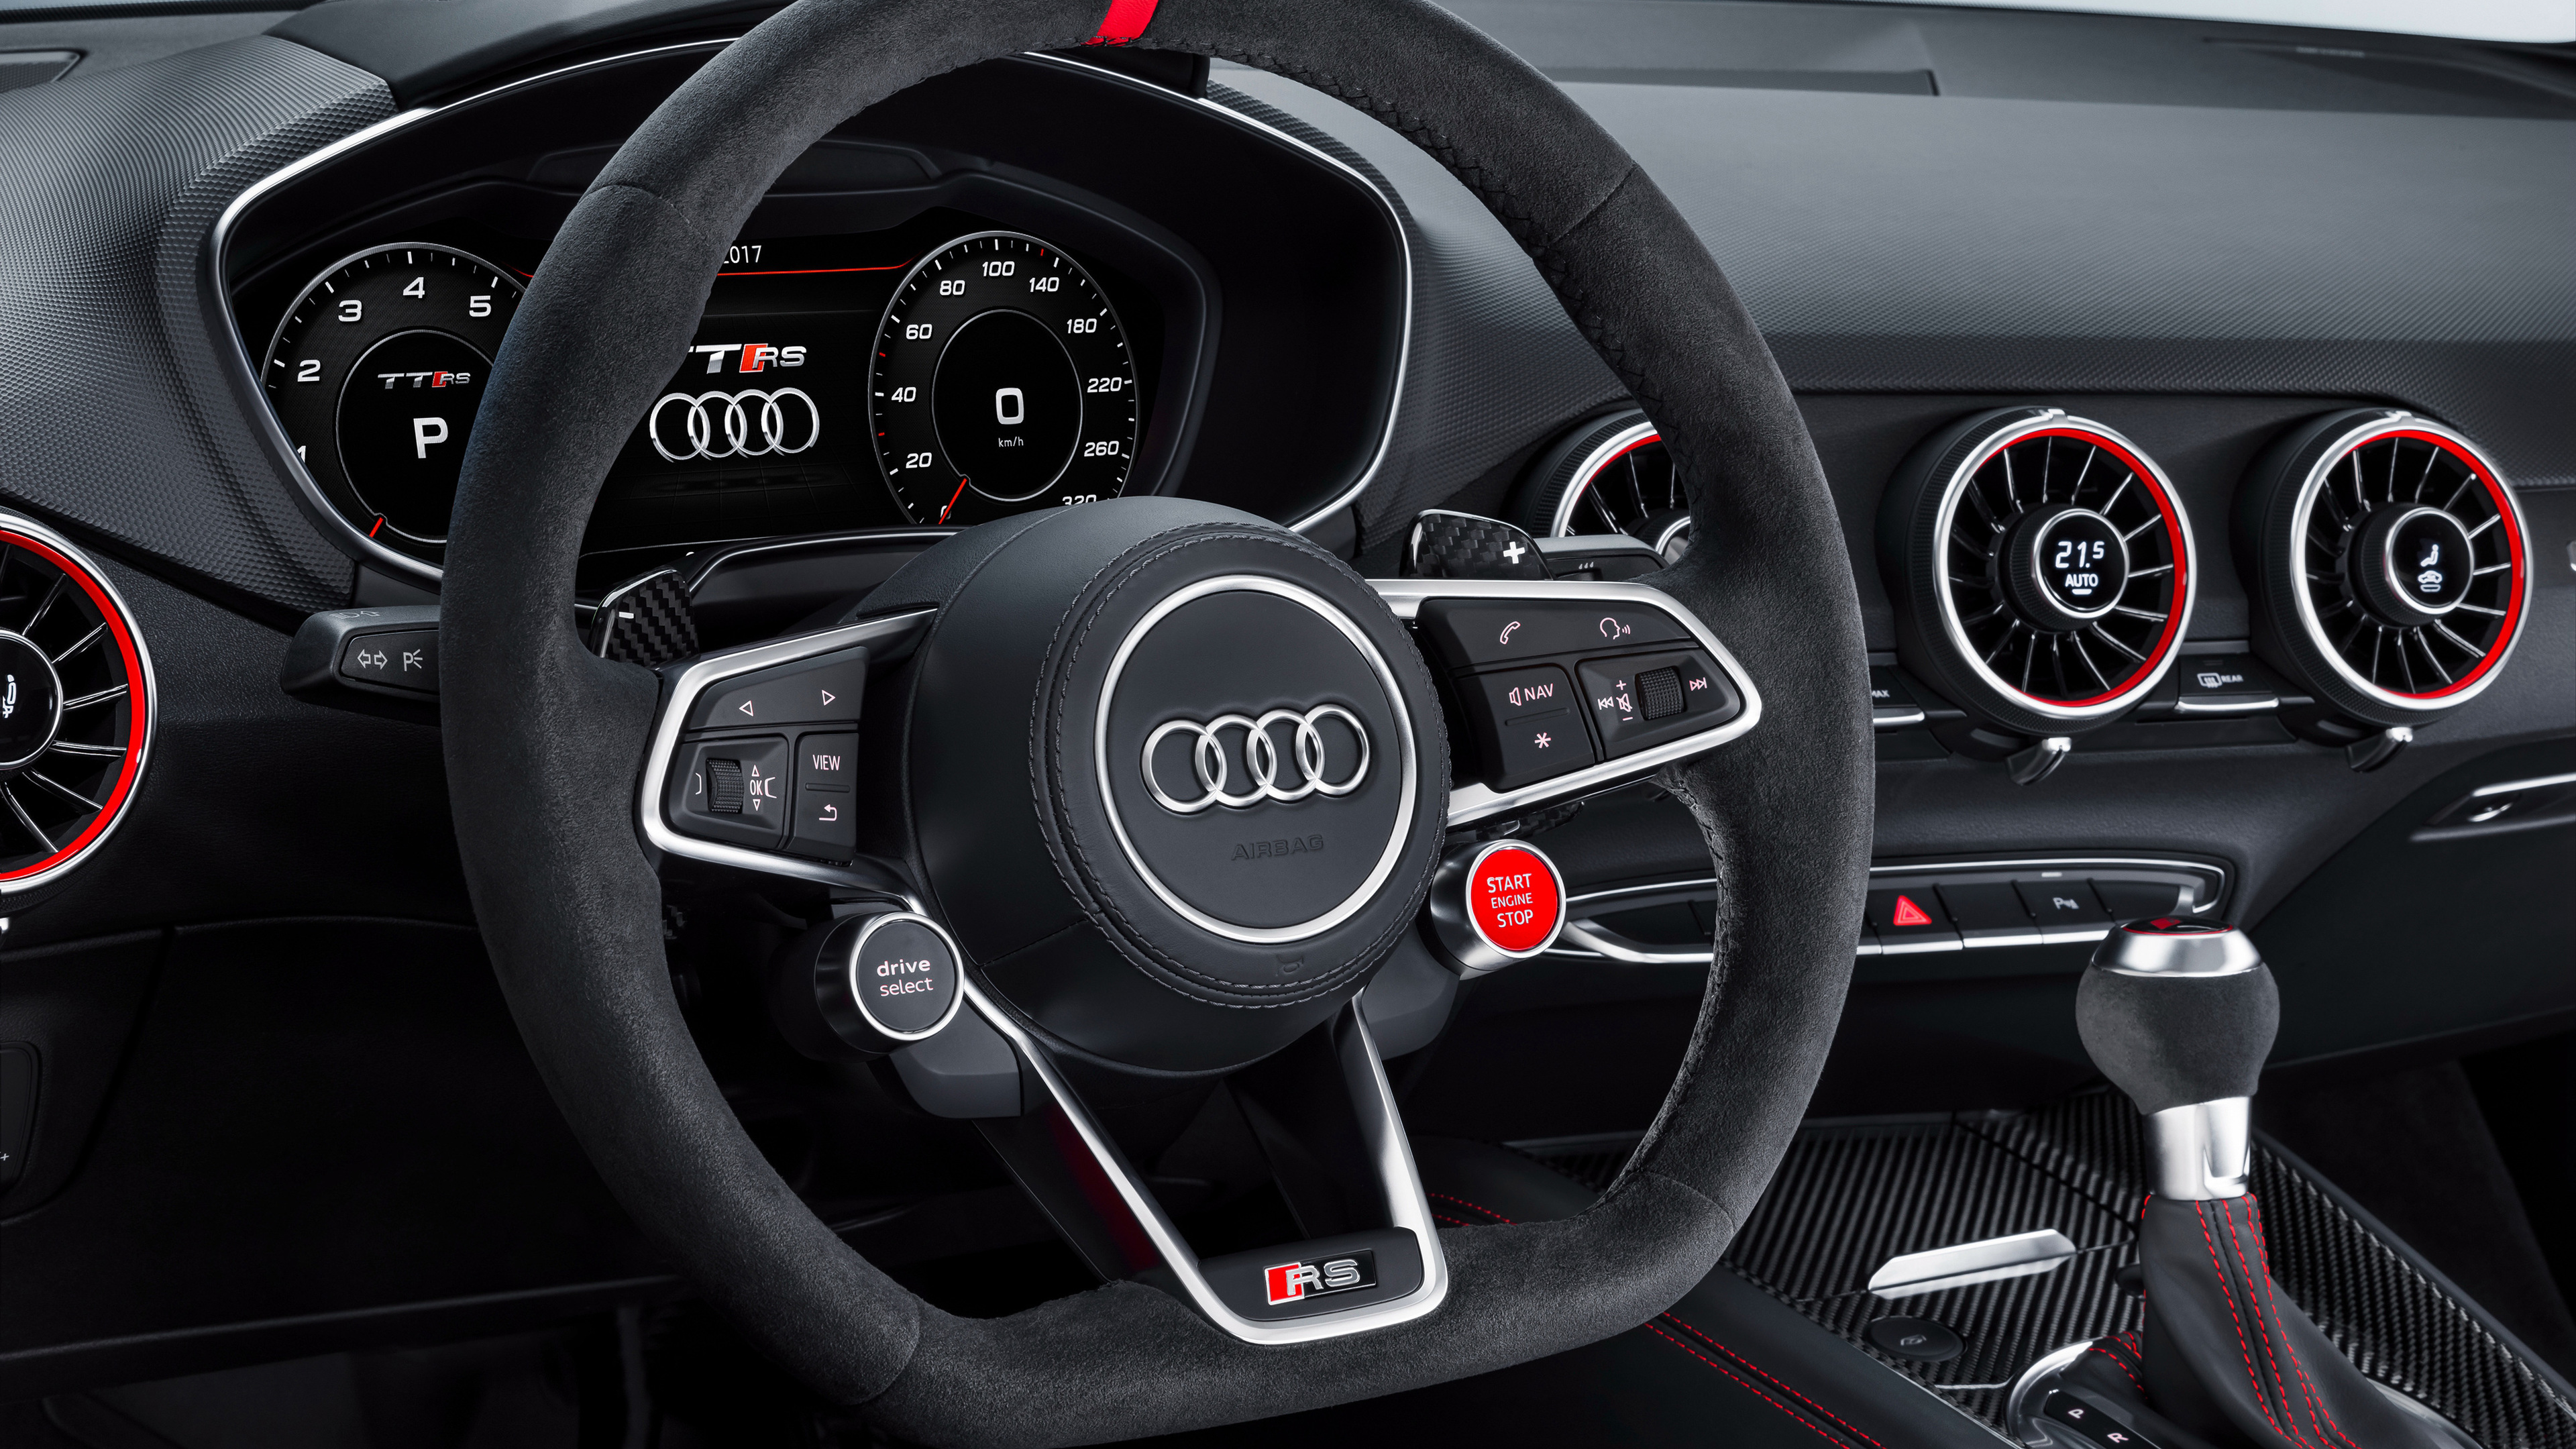 Audi Tt Rs 2017 Interior - Audi Tt 2017 Interior - HD Wallpaper 